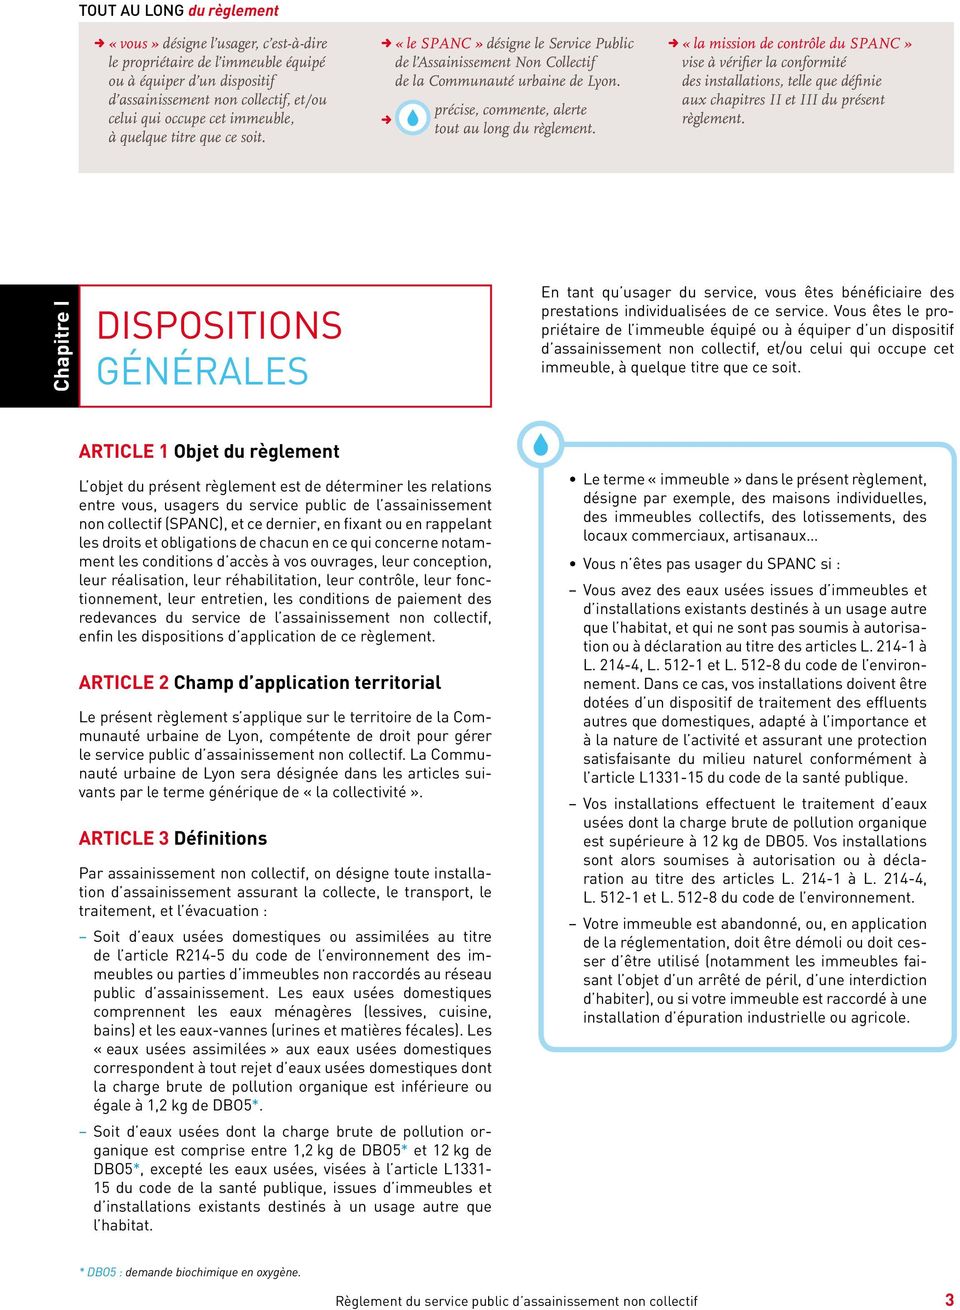 DD«la mission de contrôle du SPANC» vise à vérifier la conformité des installations, telle que définie aux chapitres II et III du présent règlement.